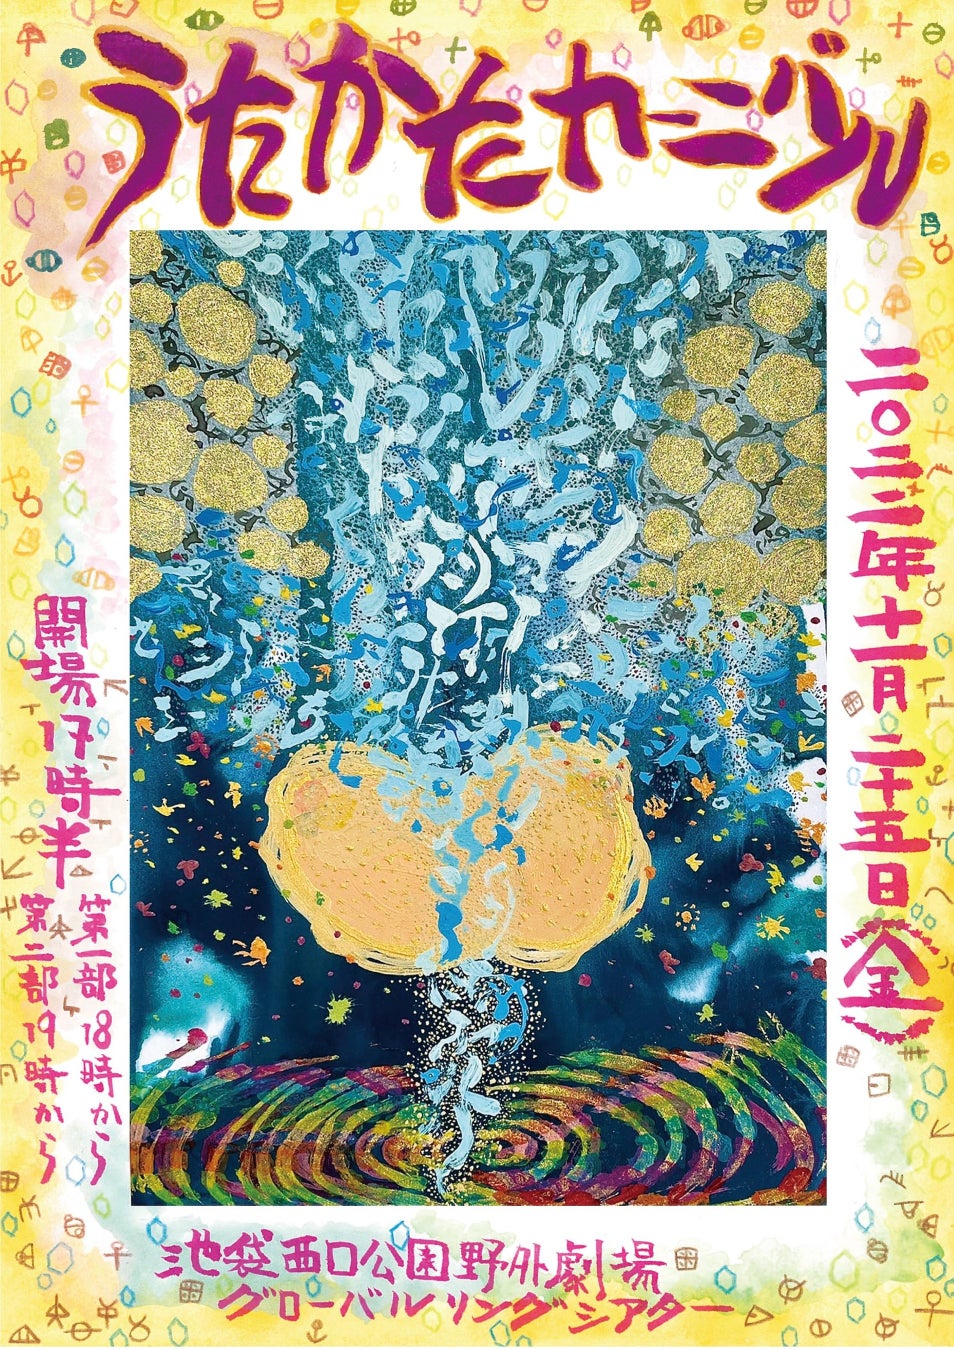 『サロンドフォレスタコンサートシリーズ 和・麗・花 』水戸・東京の２都市にて開催決定　カンフェティでチケット発売